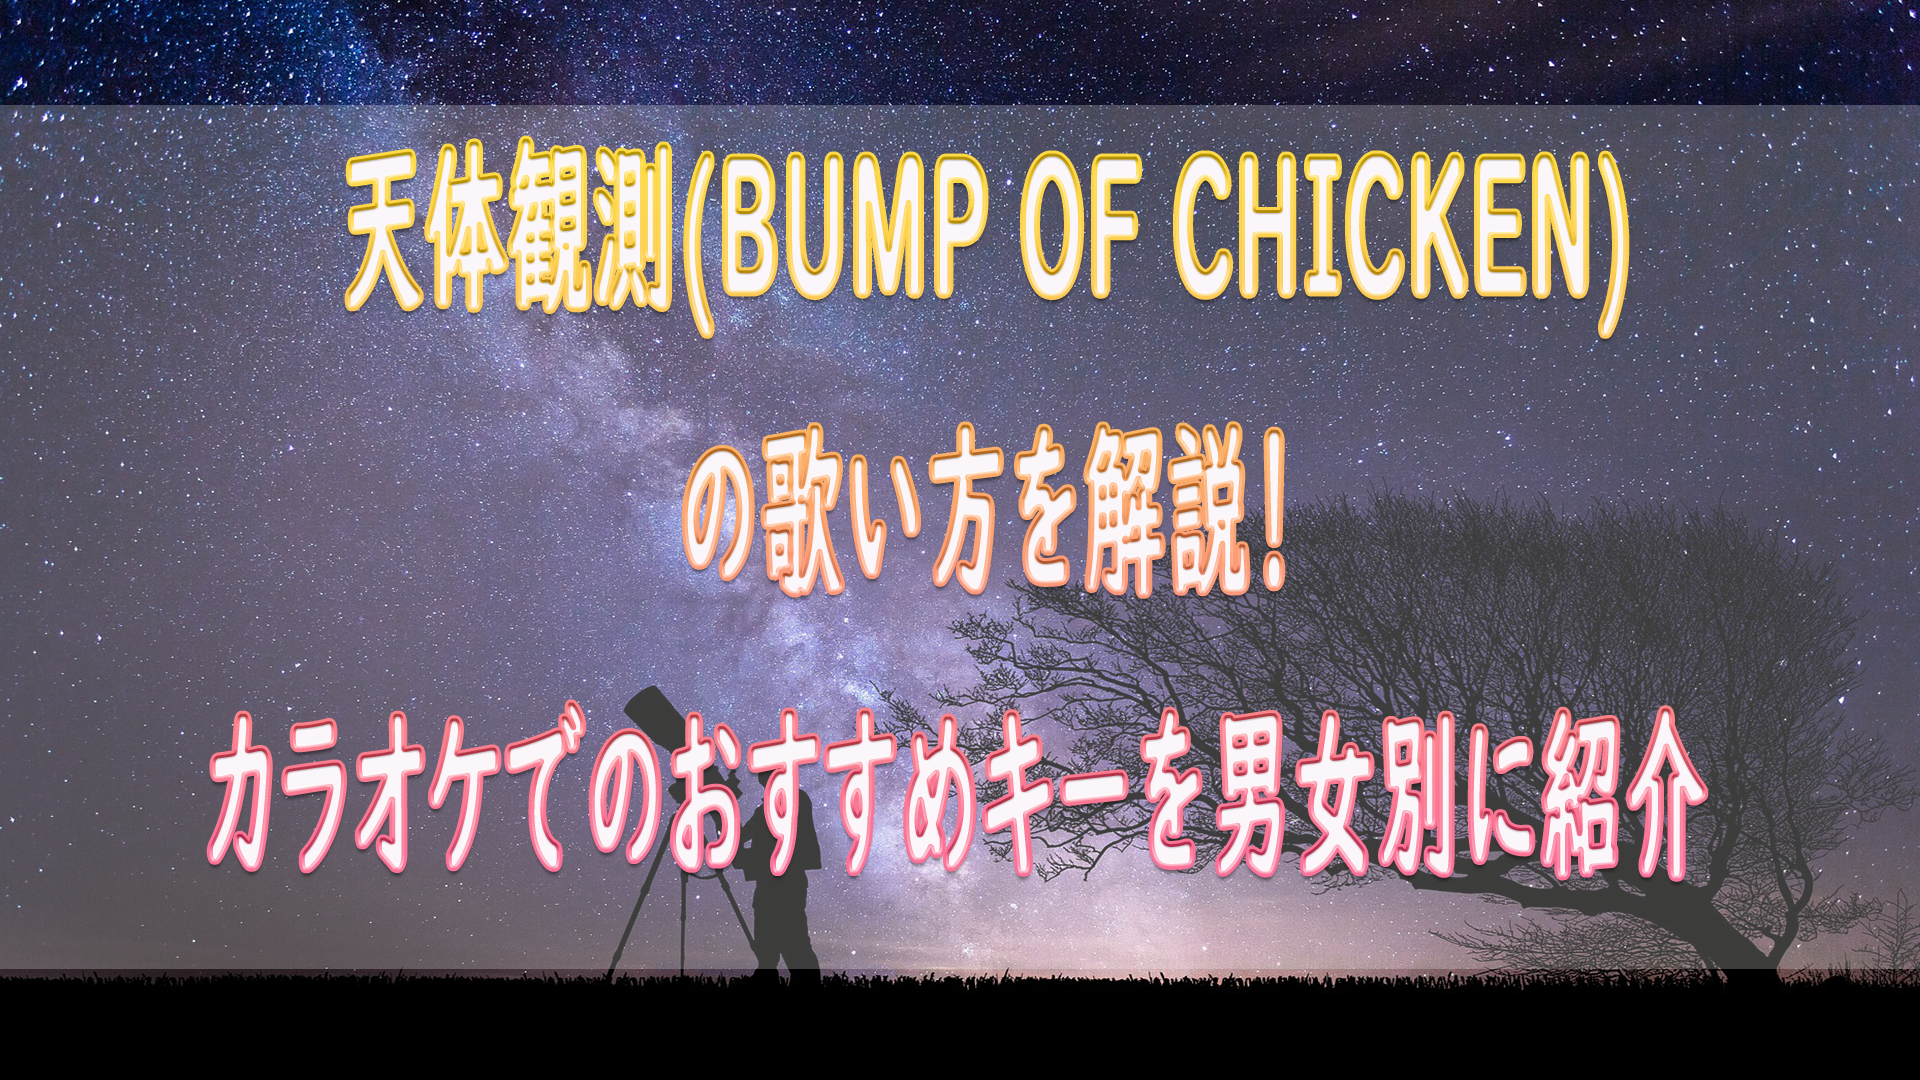 天体観測 Bump Of Chicken の歌い方を解説 カラオケでのおすすめキーを女性 男性別にいくつなのか紹介 ボイトレマニア